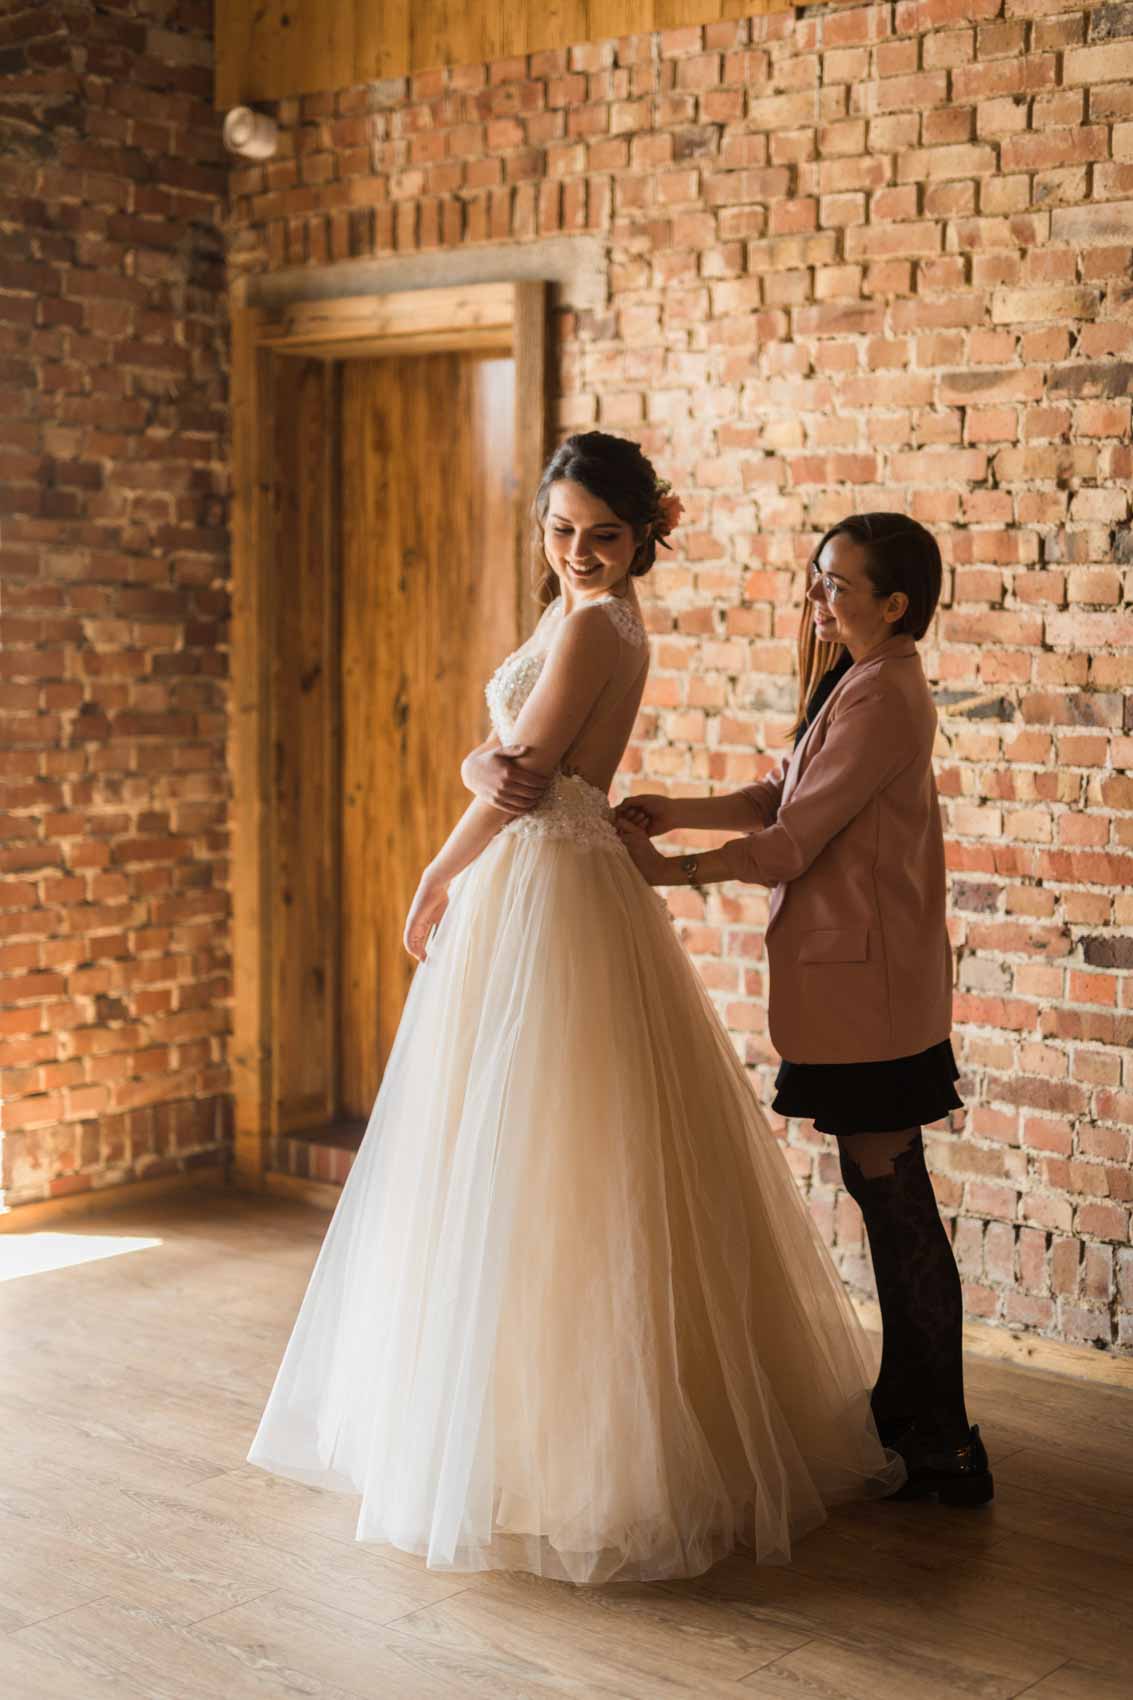 Hochzeitsplanerin Jana Opitz hilft Braut beim Anziehen des Brautkleids bei einem Styled Shoot auf Hof Frien